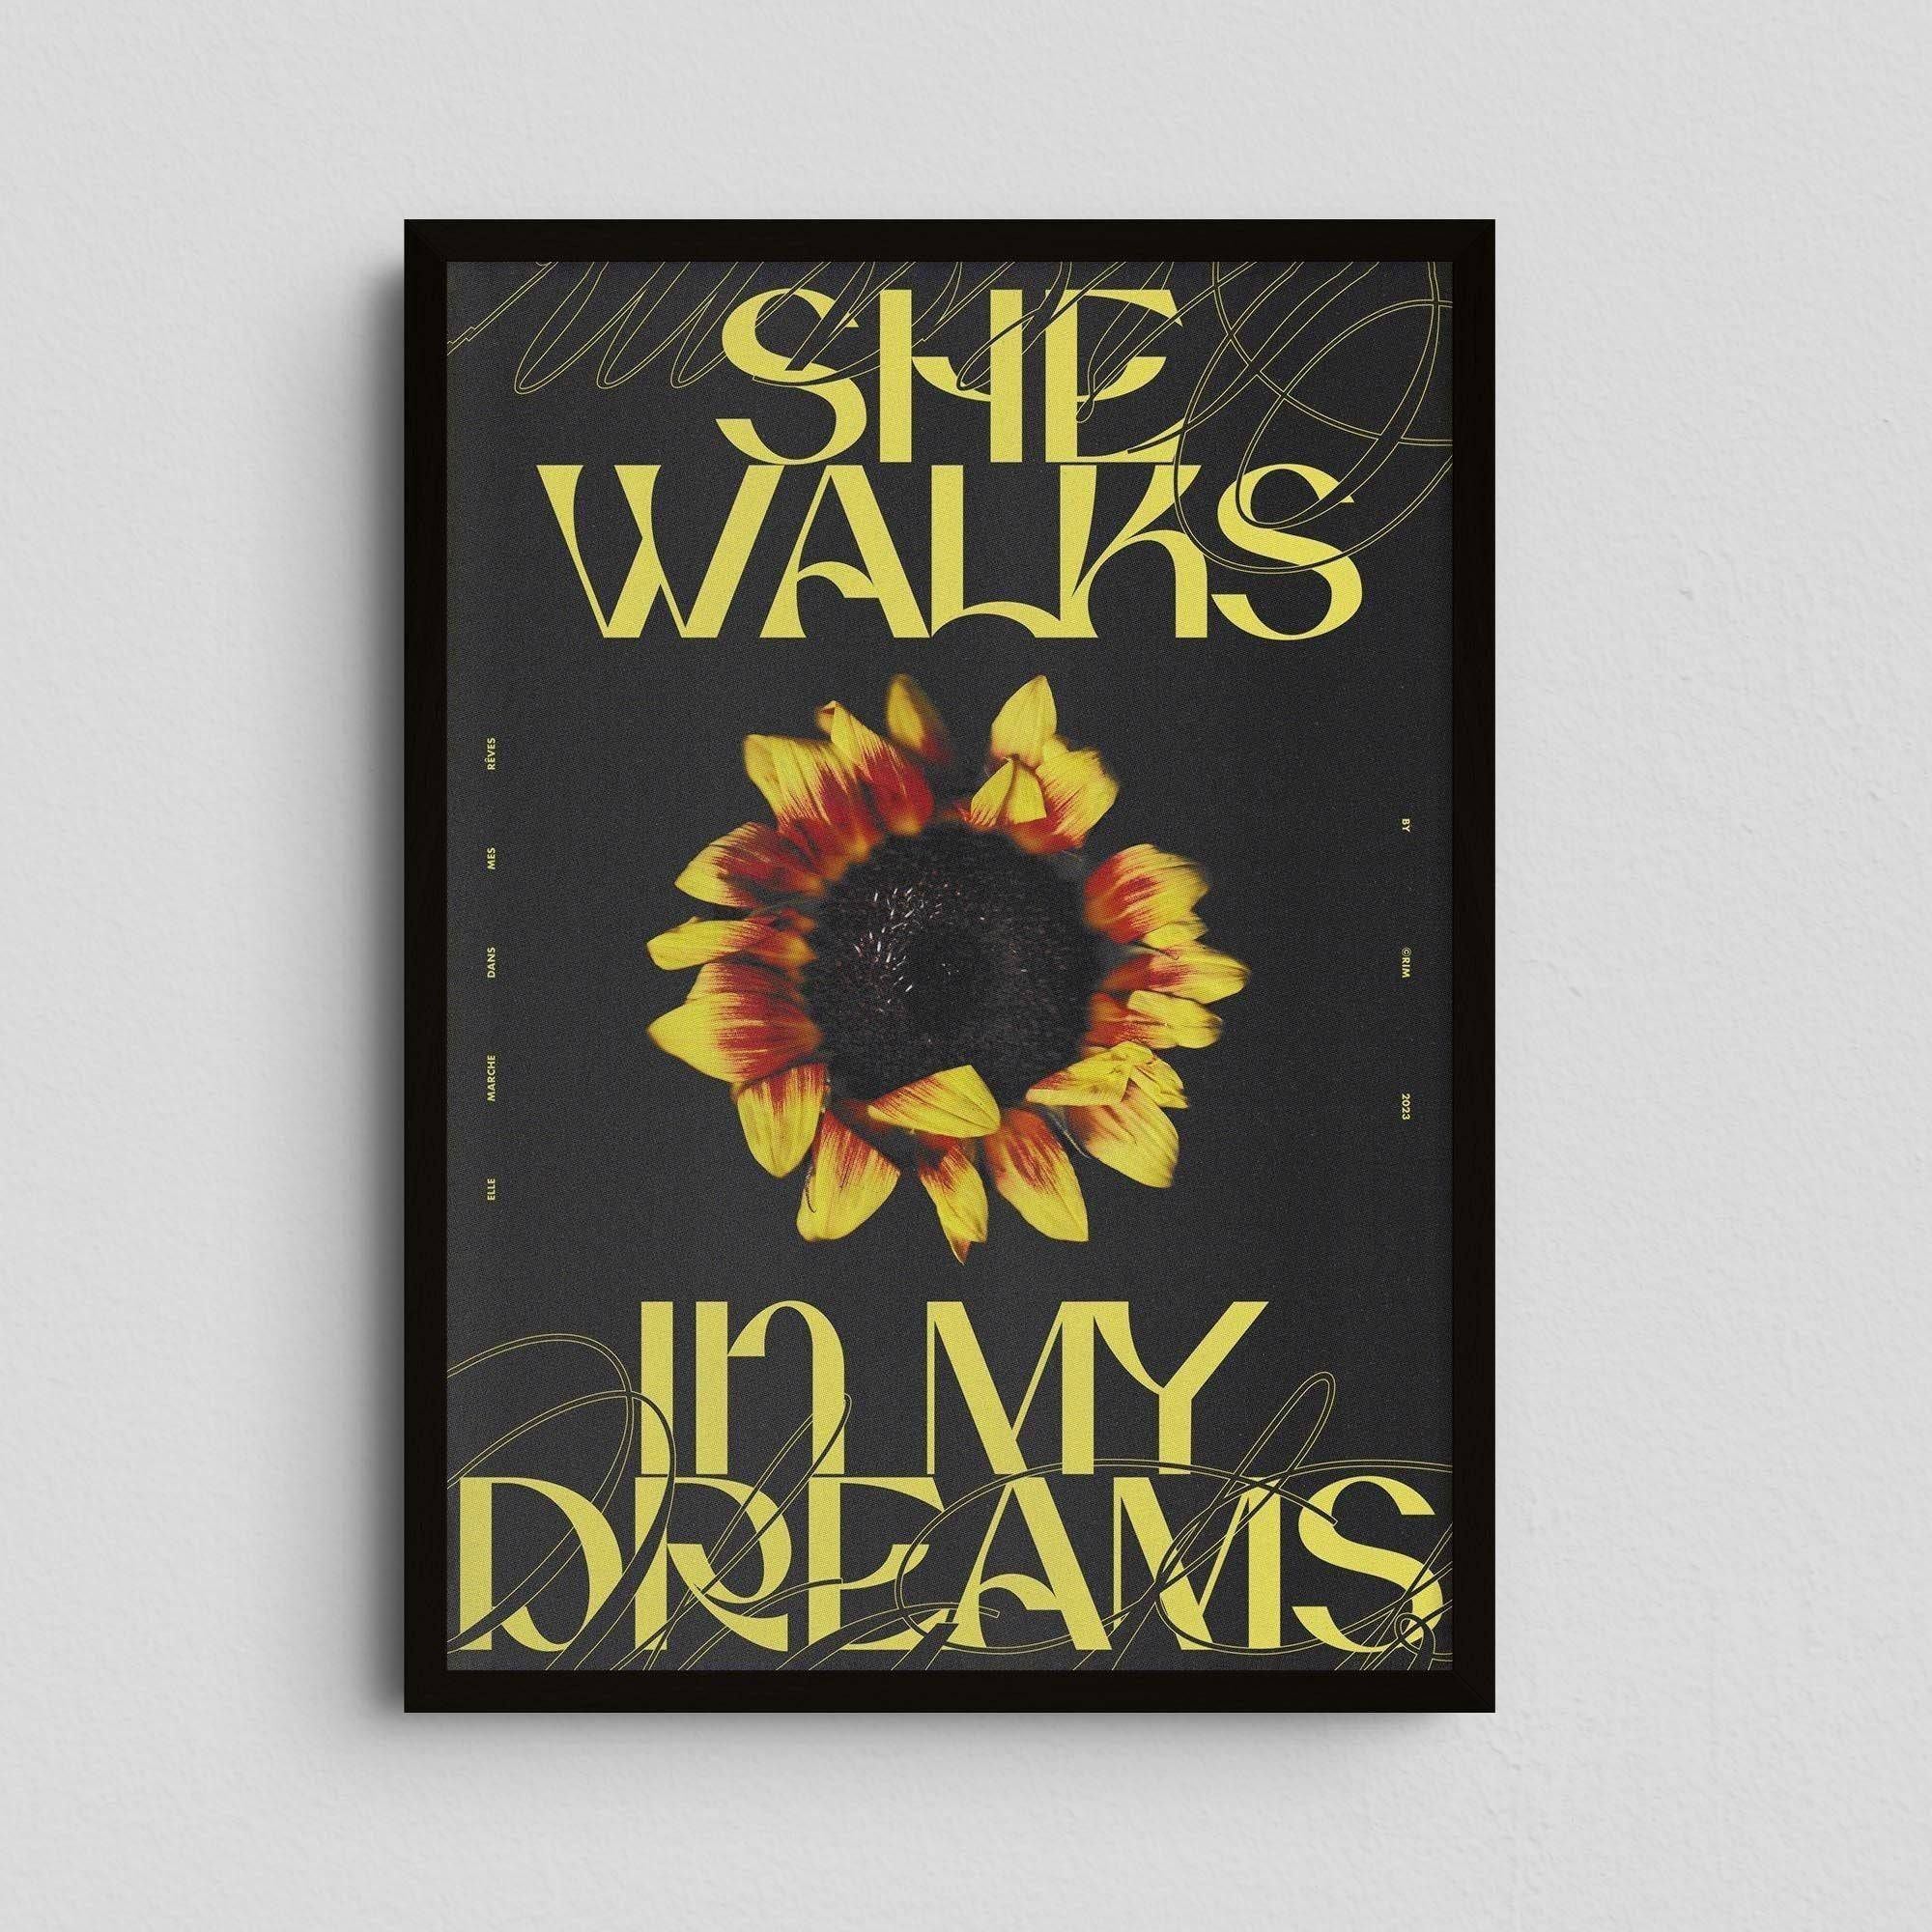 She Walks In My Dreams - Rīm Atelier